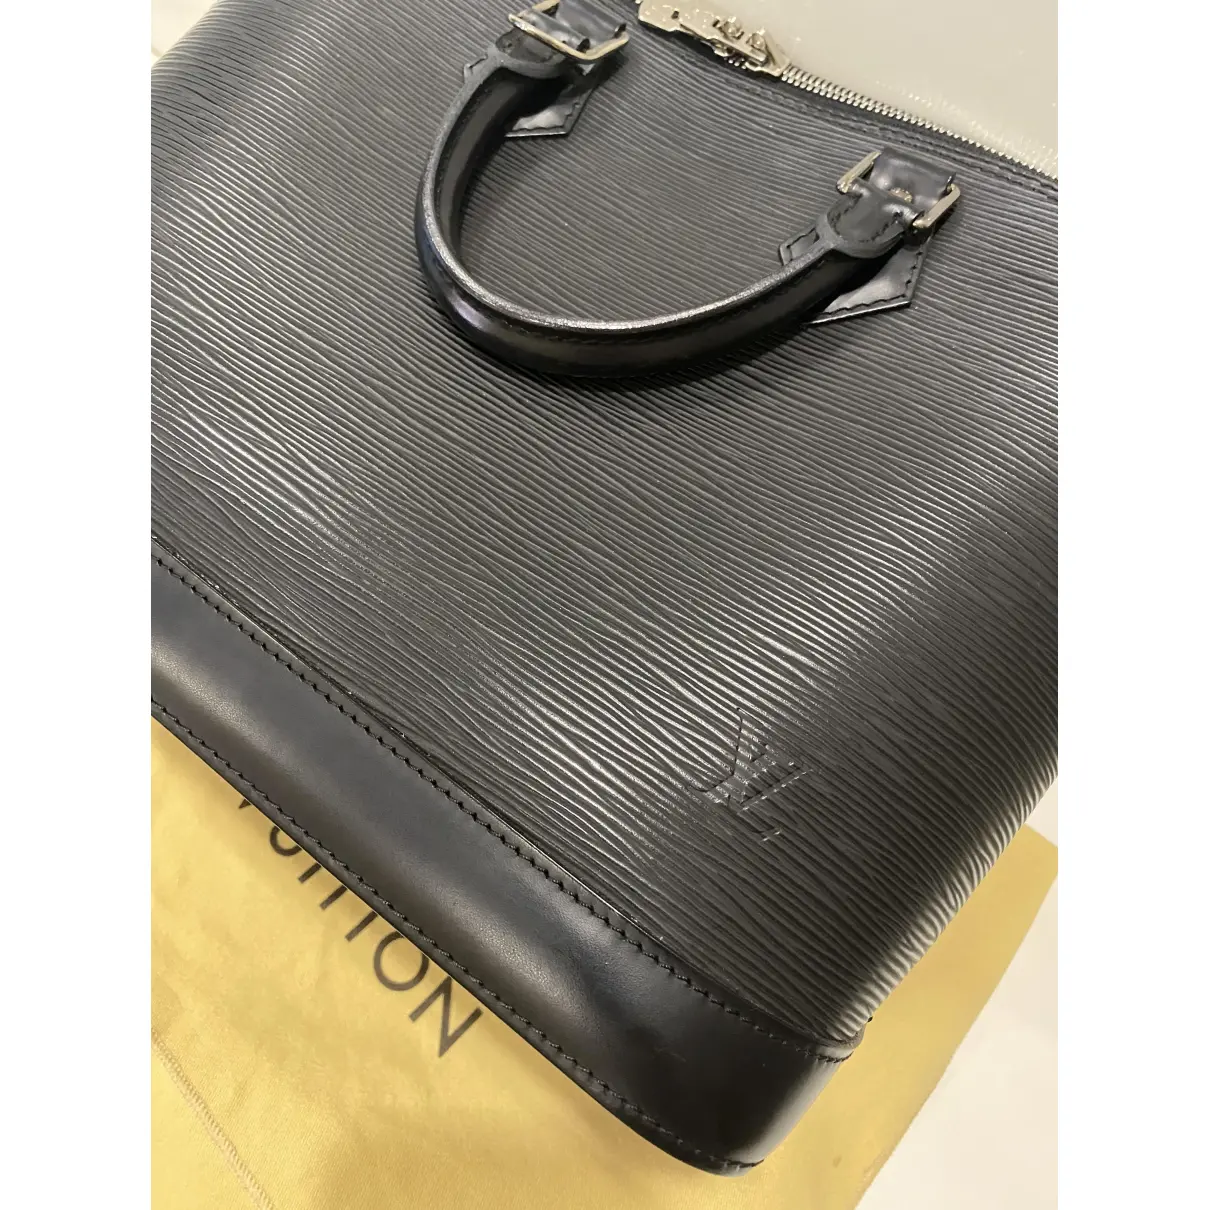 Alma leather handbag Louis Vuitton